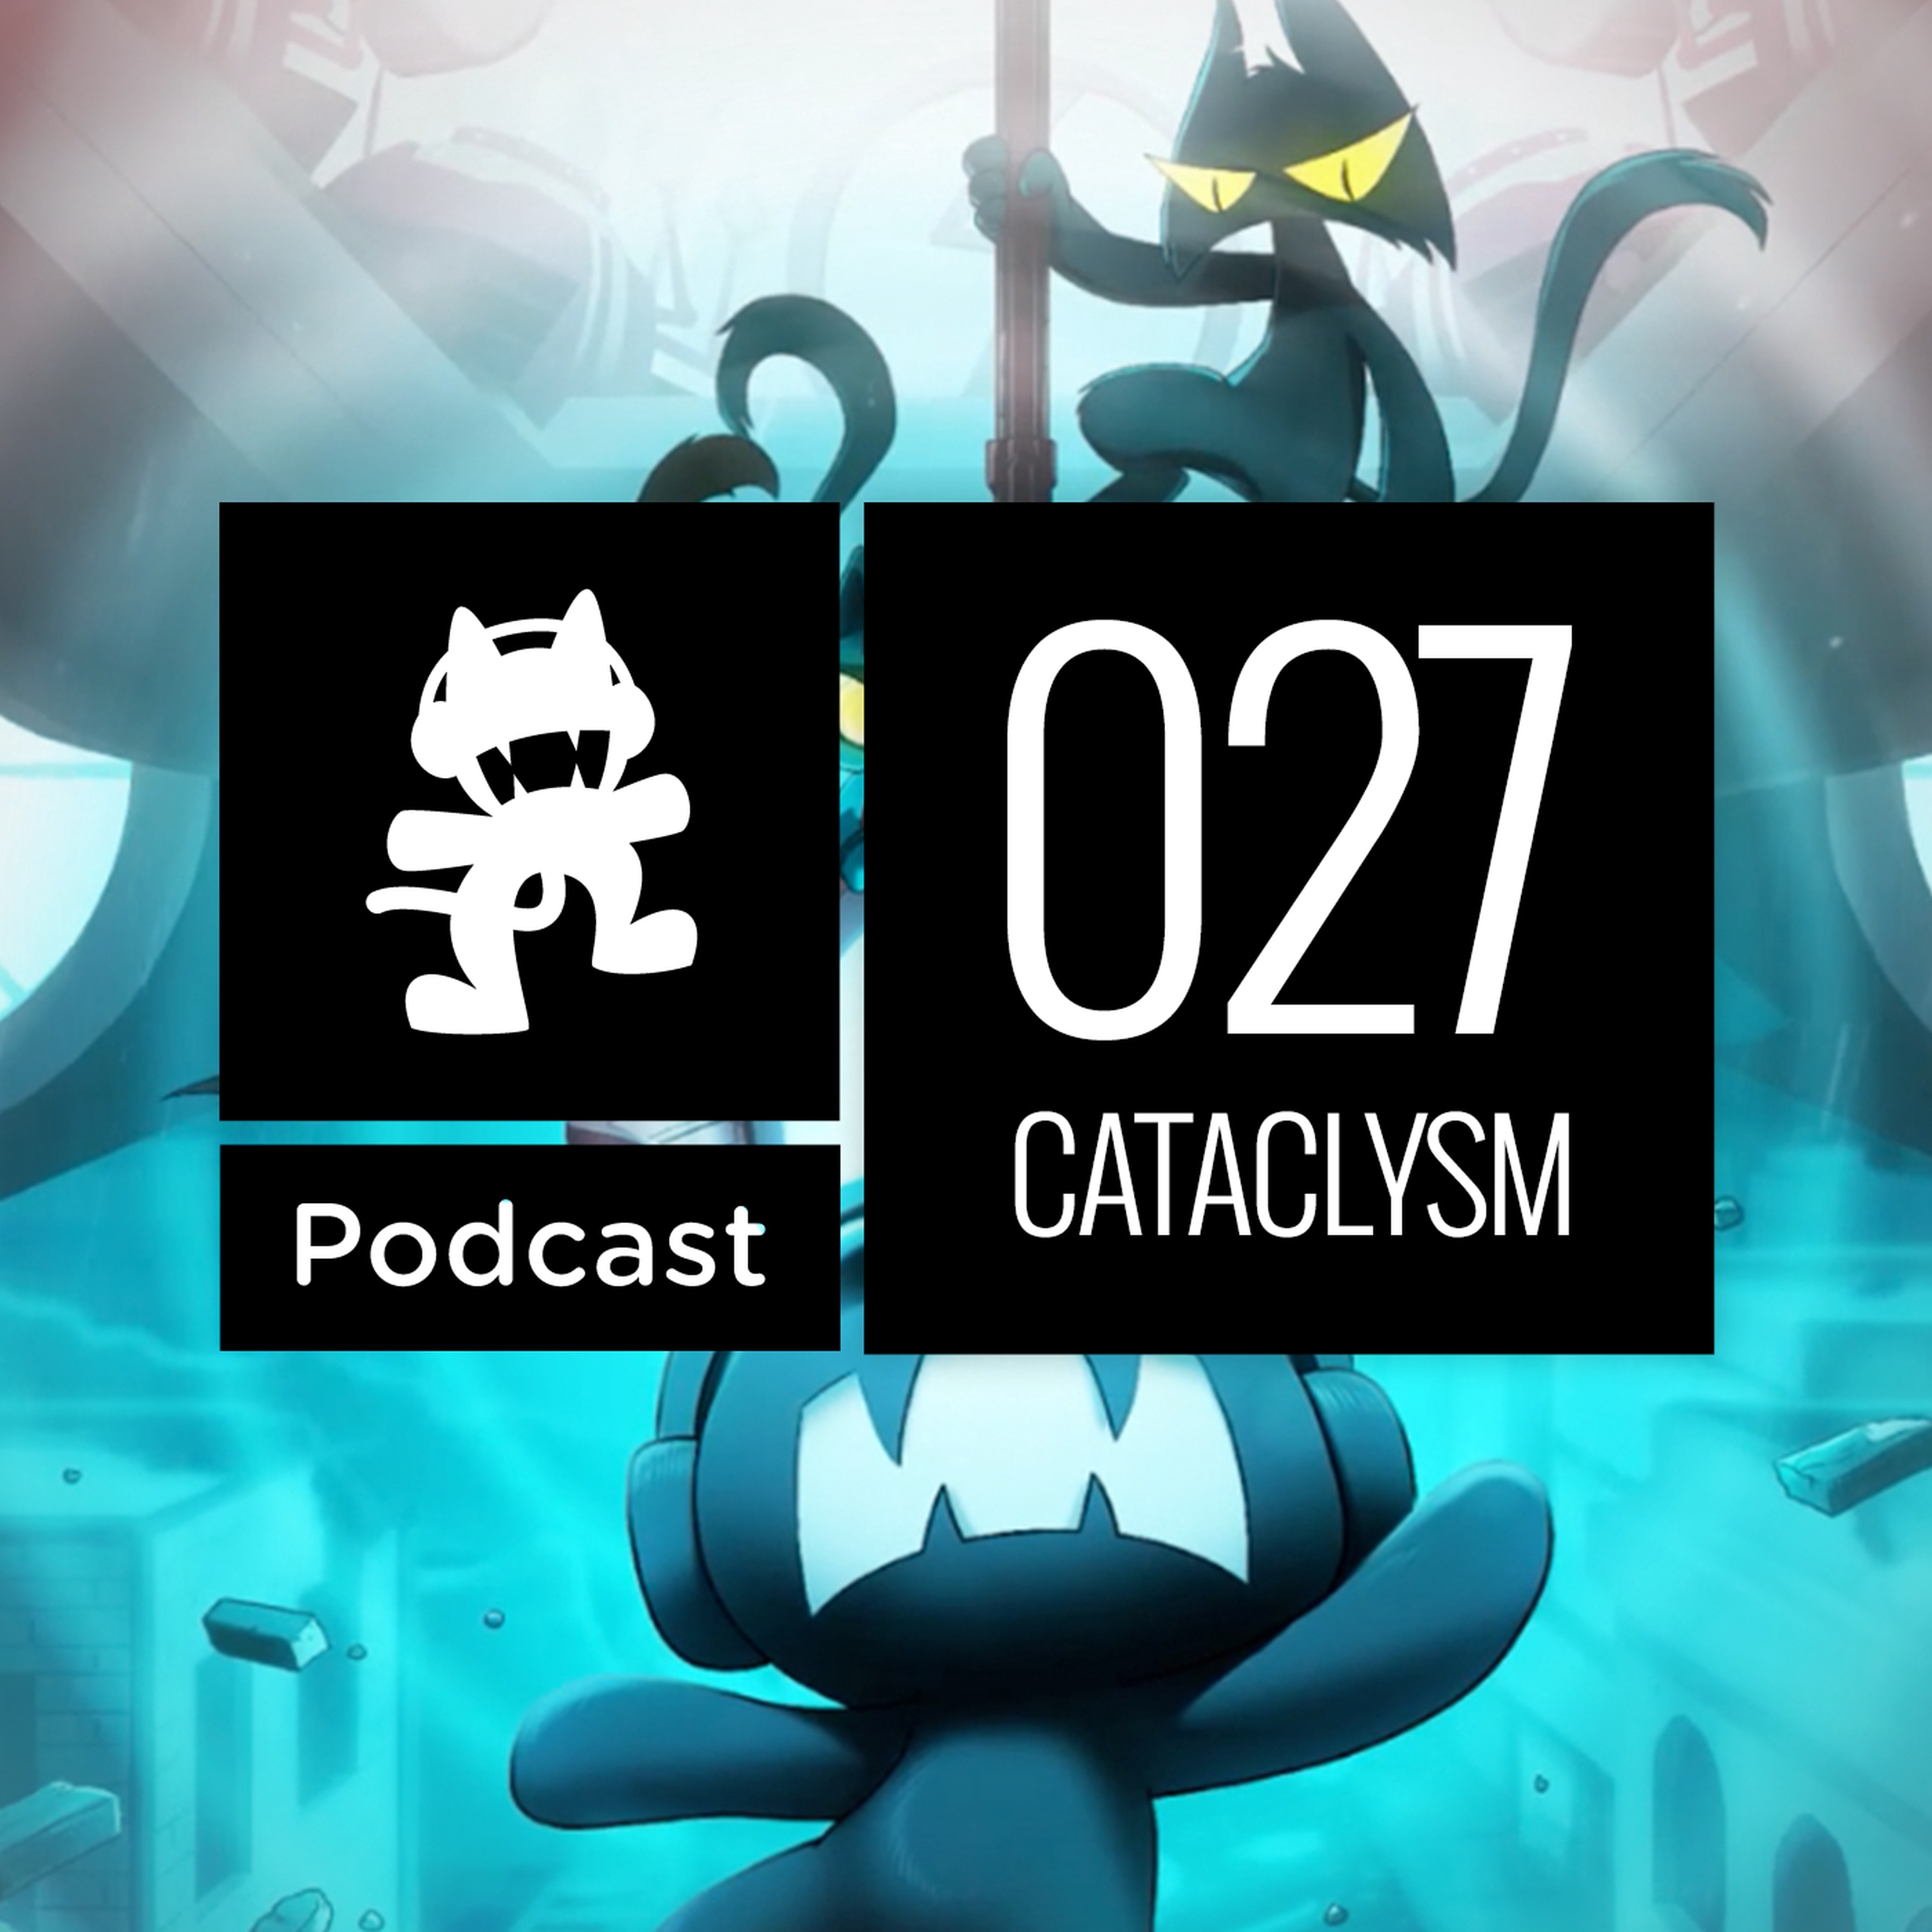 soundcloud monstercat podcast cataclysm